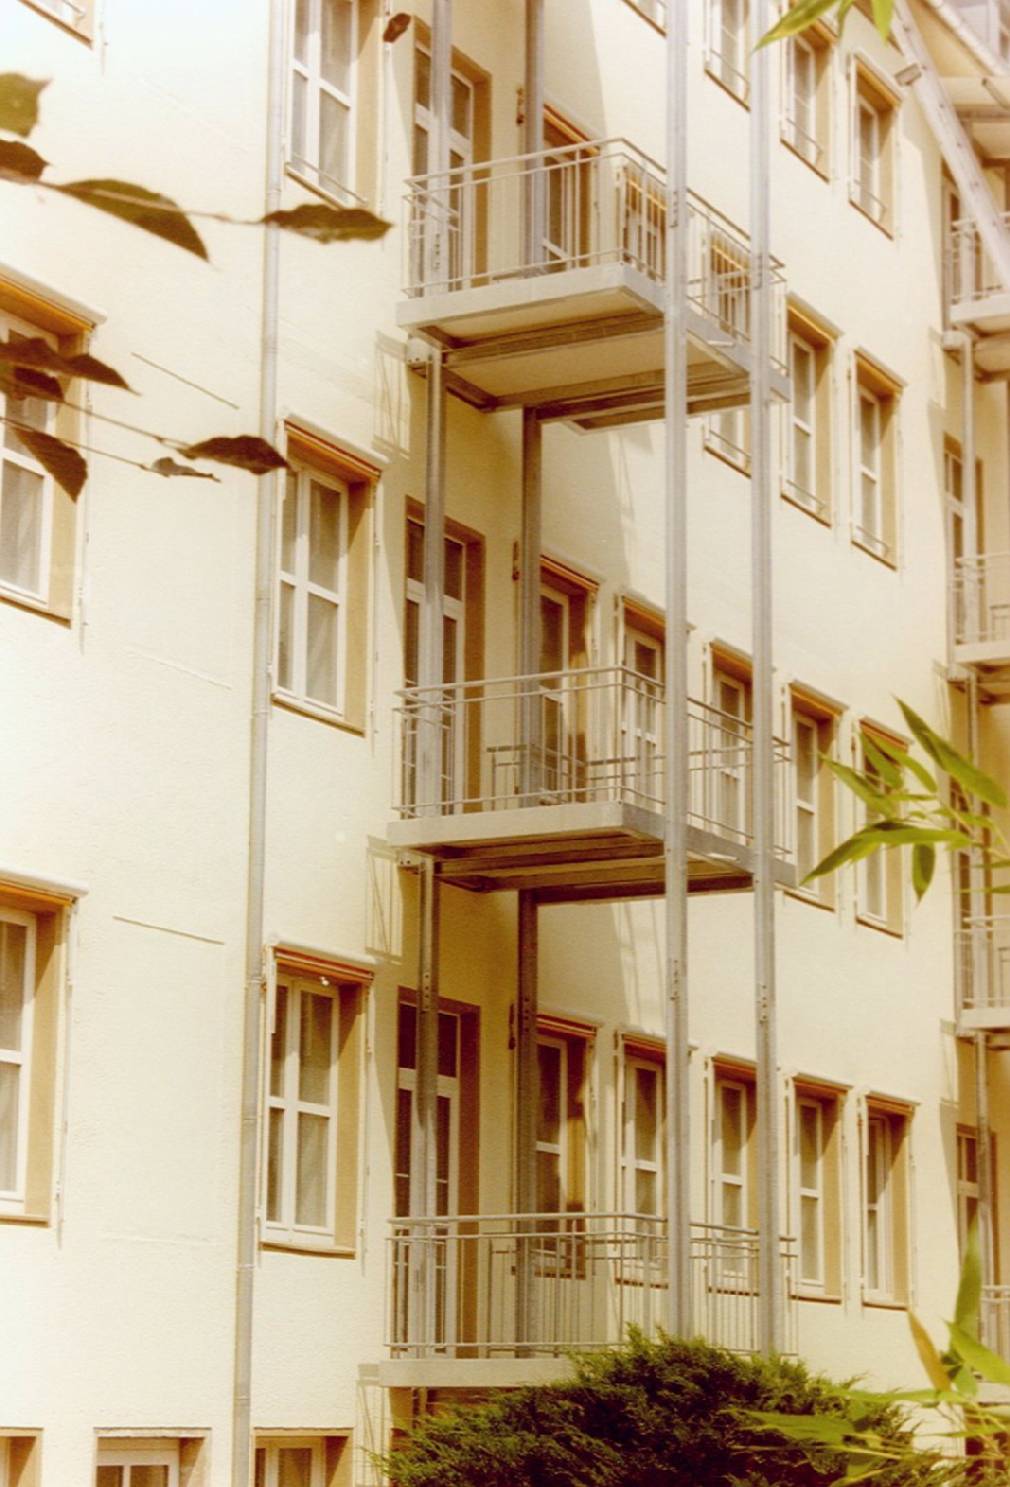 Mit einem Balkon haben Sie auch in der Stadt die Möglichkeit sich draußen eine eigene Oase zu errichten, wir bieten dafür die passenden Balkonanlagen